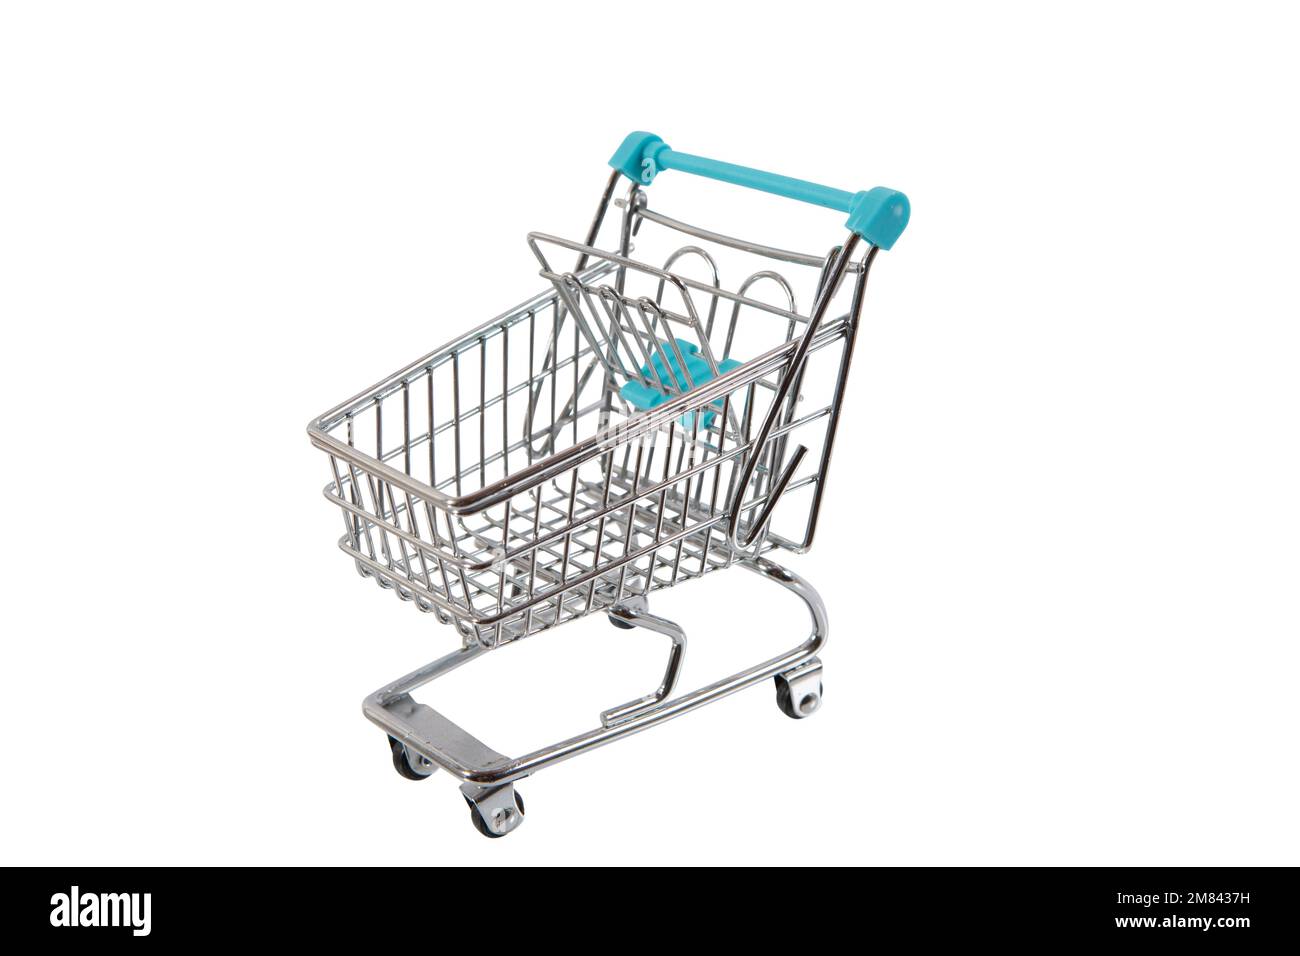 Modell eines Einkaufswagen wie im Supermarkt, hier mit Euroscheinen oder Kleingeld gefüllt. Symbolbild, freigestellt. Stock Photo